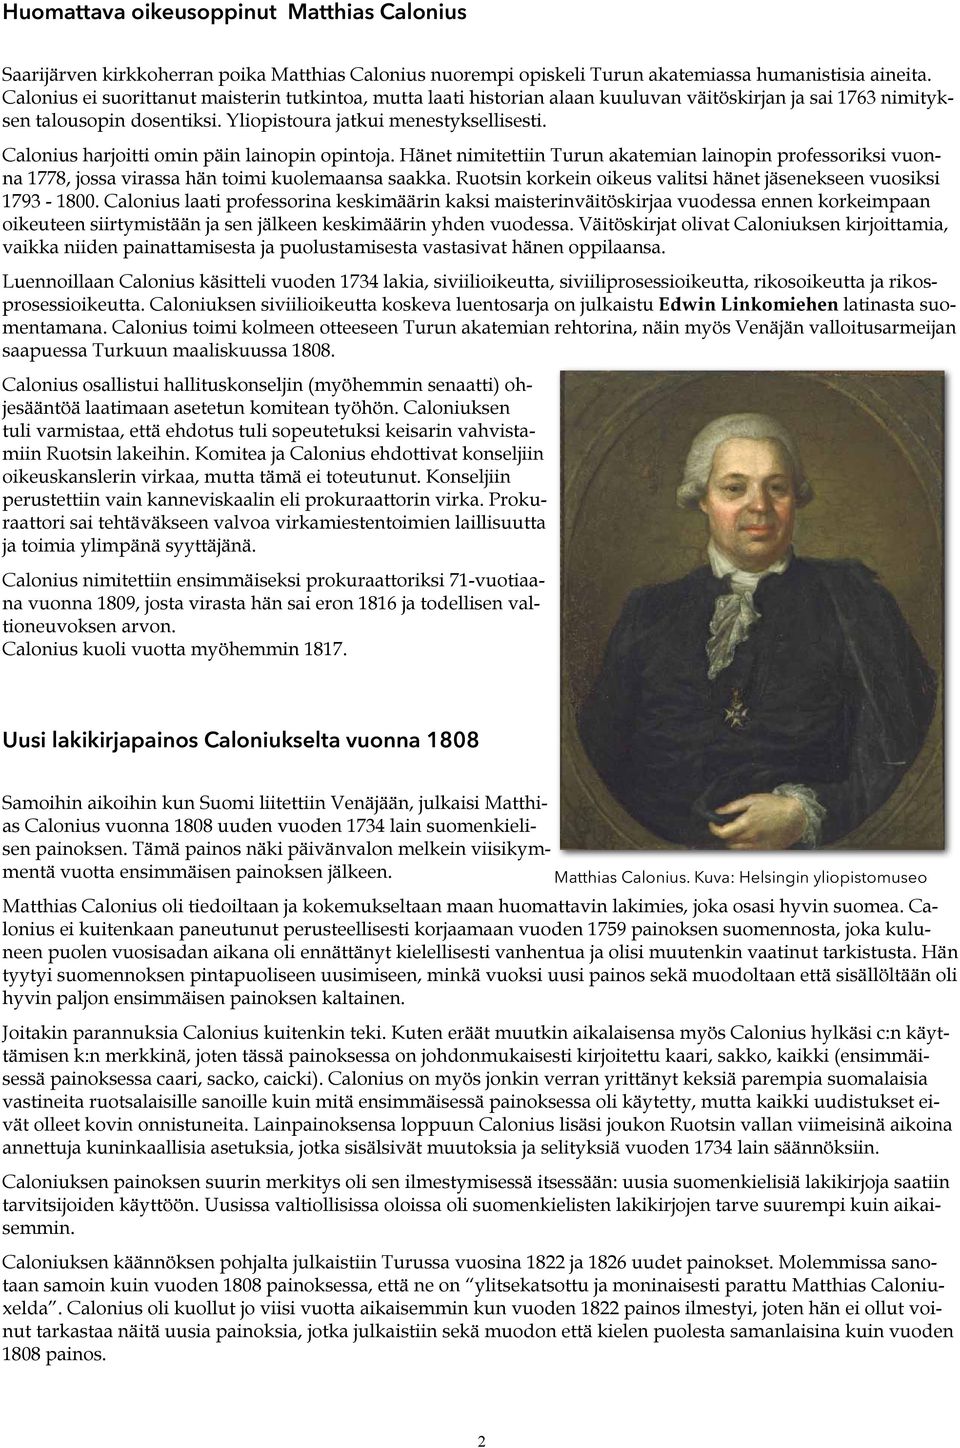 Calonius harjoitti omin päin lainopin opintoja. Hänet nimitettiin Turun akatemian lainopin professoriksi vuonna 1778, jossa virassa hän toimi kuolemaansa saakka.